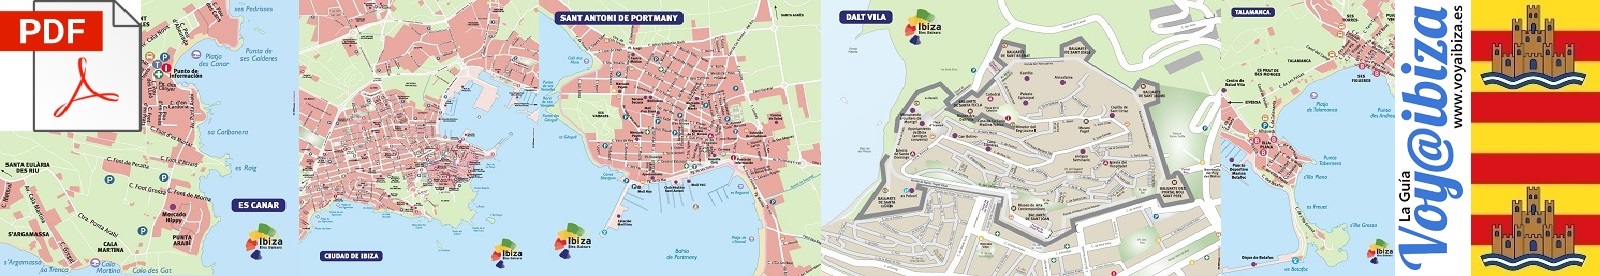 Mapas de Ibiza (PDF)